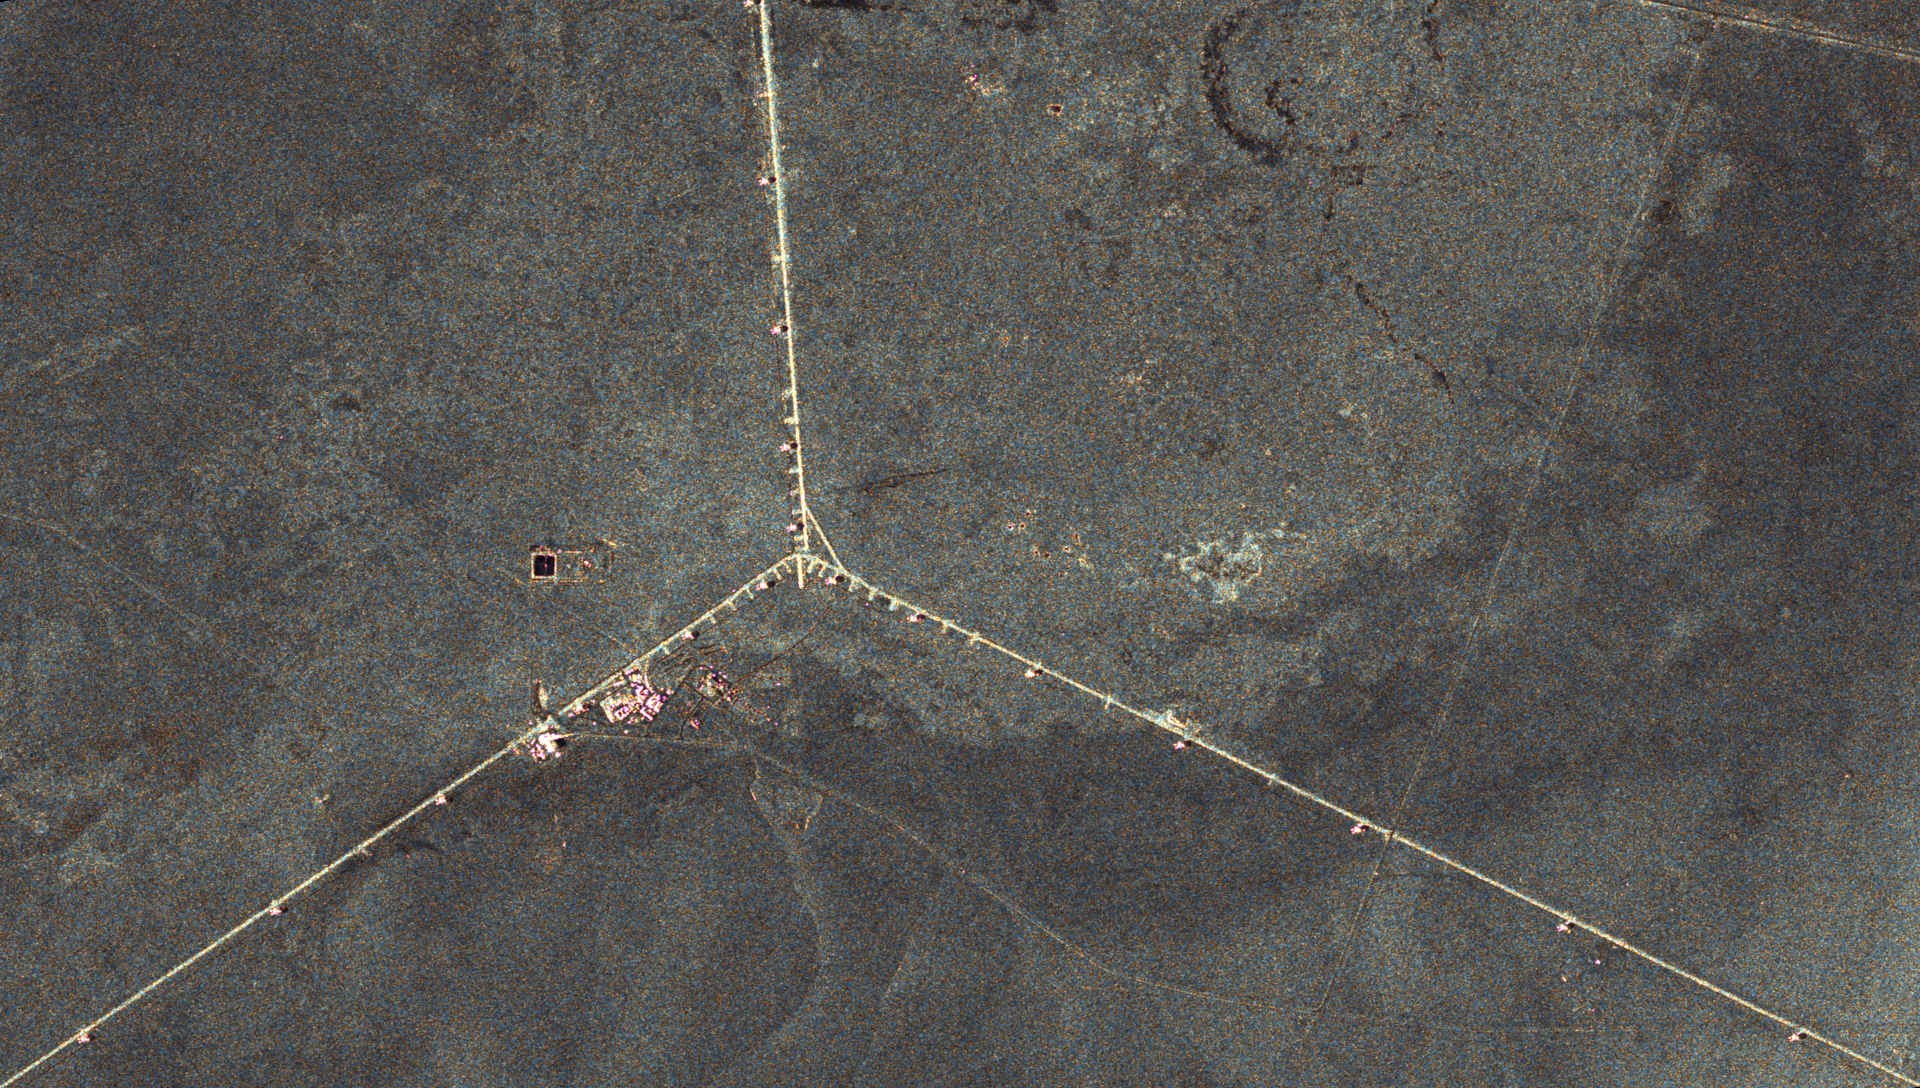 Satellitenbild des Radioteleskops "Very Large Array" im Zoom